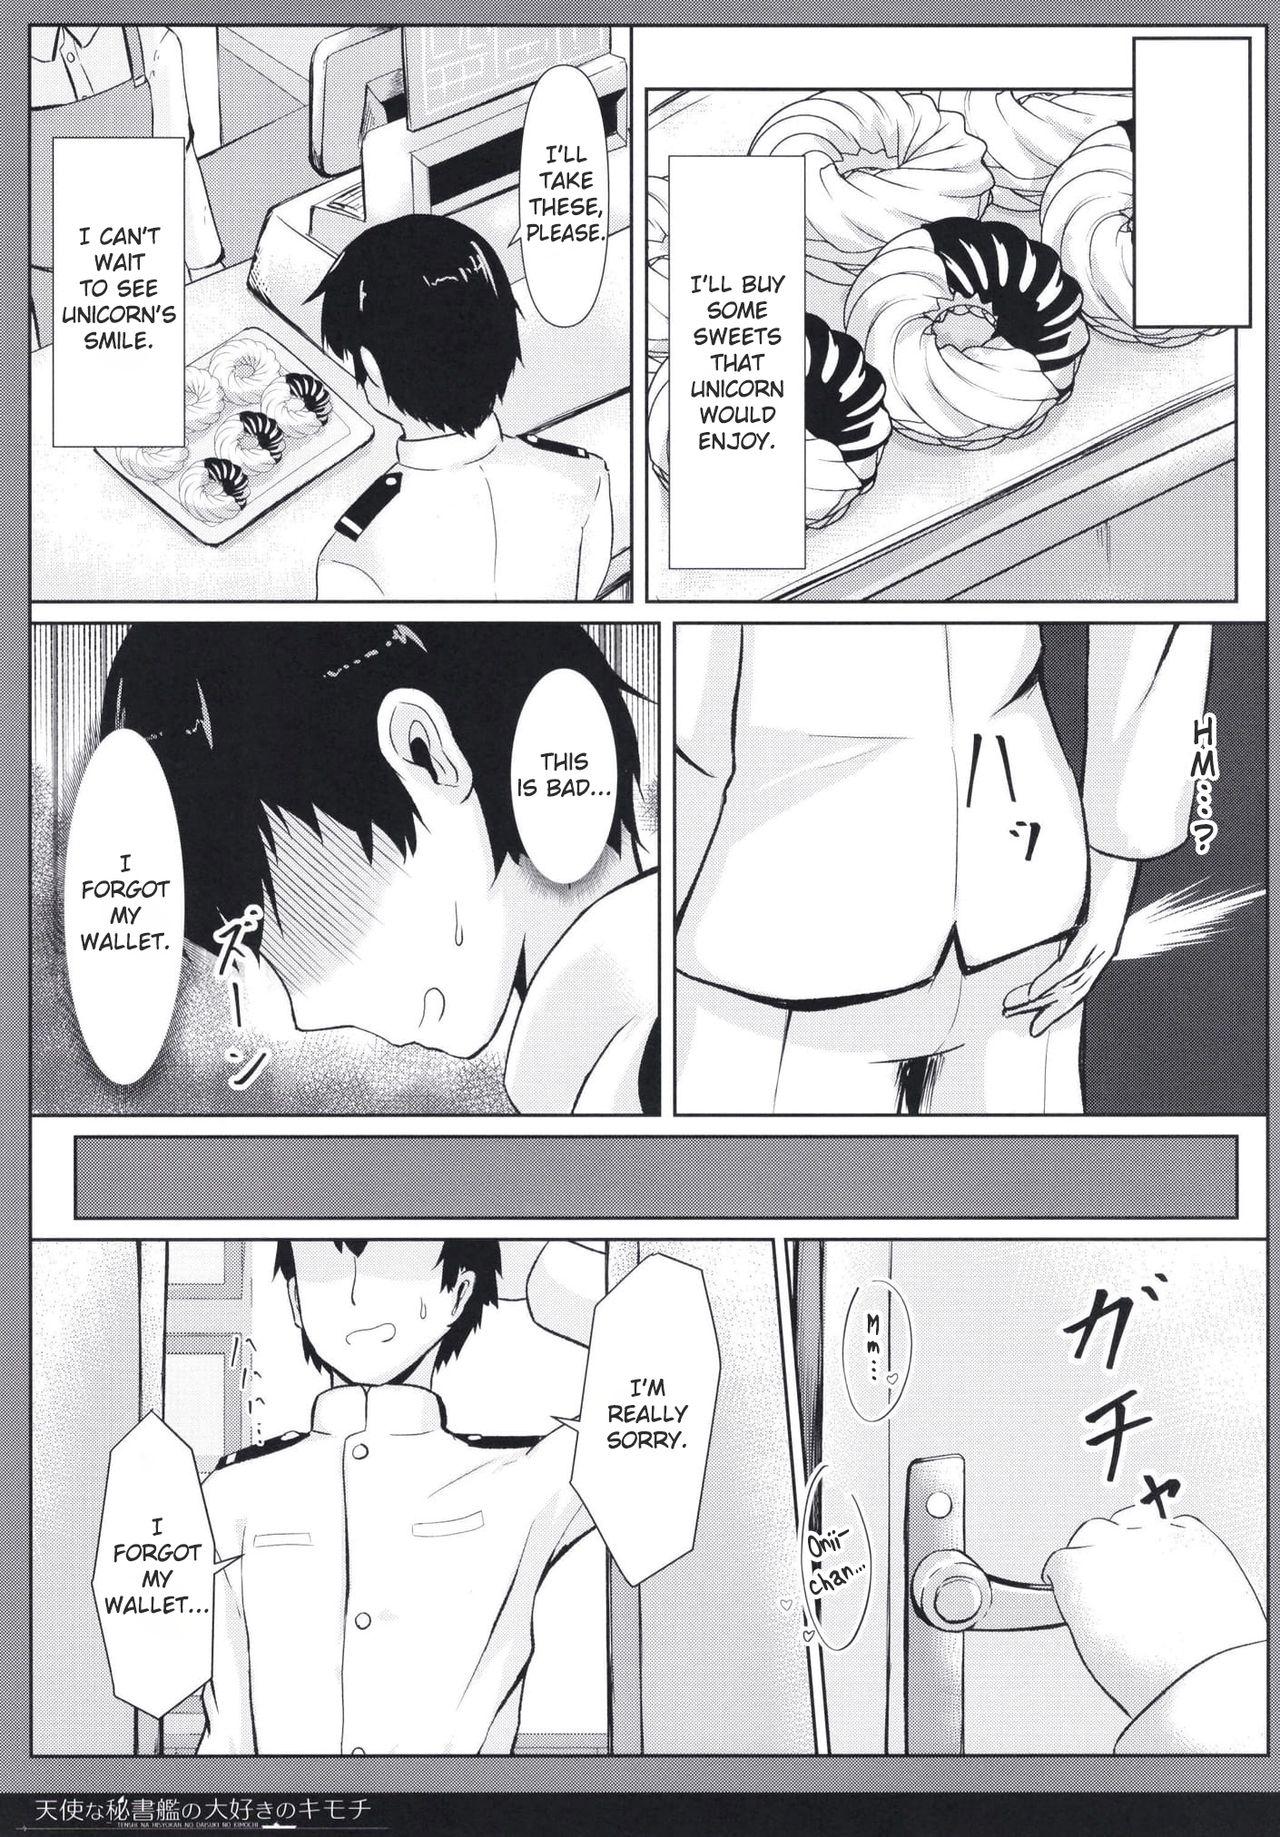 Rough Sex Tenshi na Hisyokan no Daisuki no Kimochi - Azur lane Teen Porn - Page 7